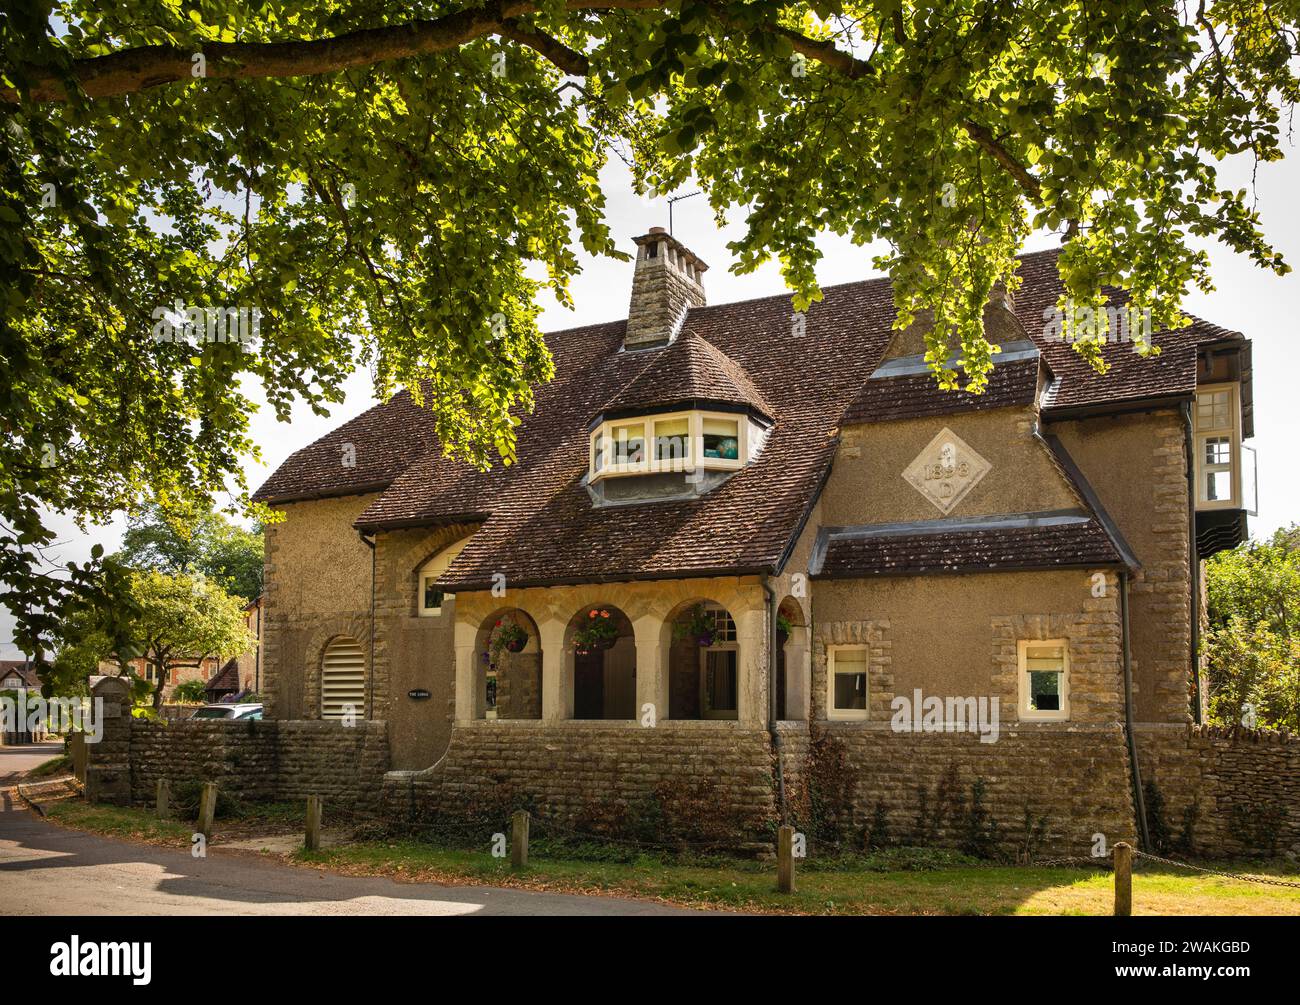 Großbritannien, England, Oxfordshire, Fringford, Main Street, the Lodge, 1895 Kunsthandwerk Haus Stockfoto